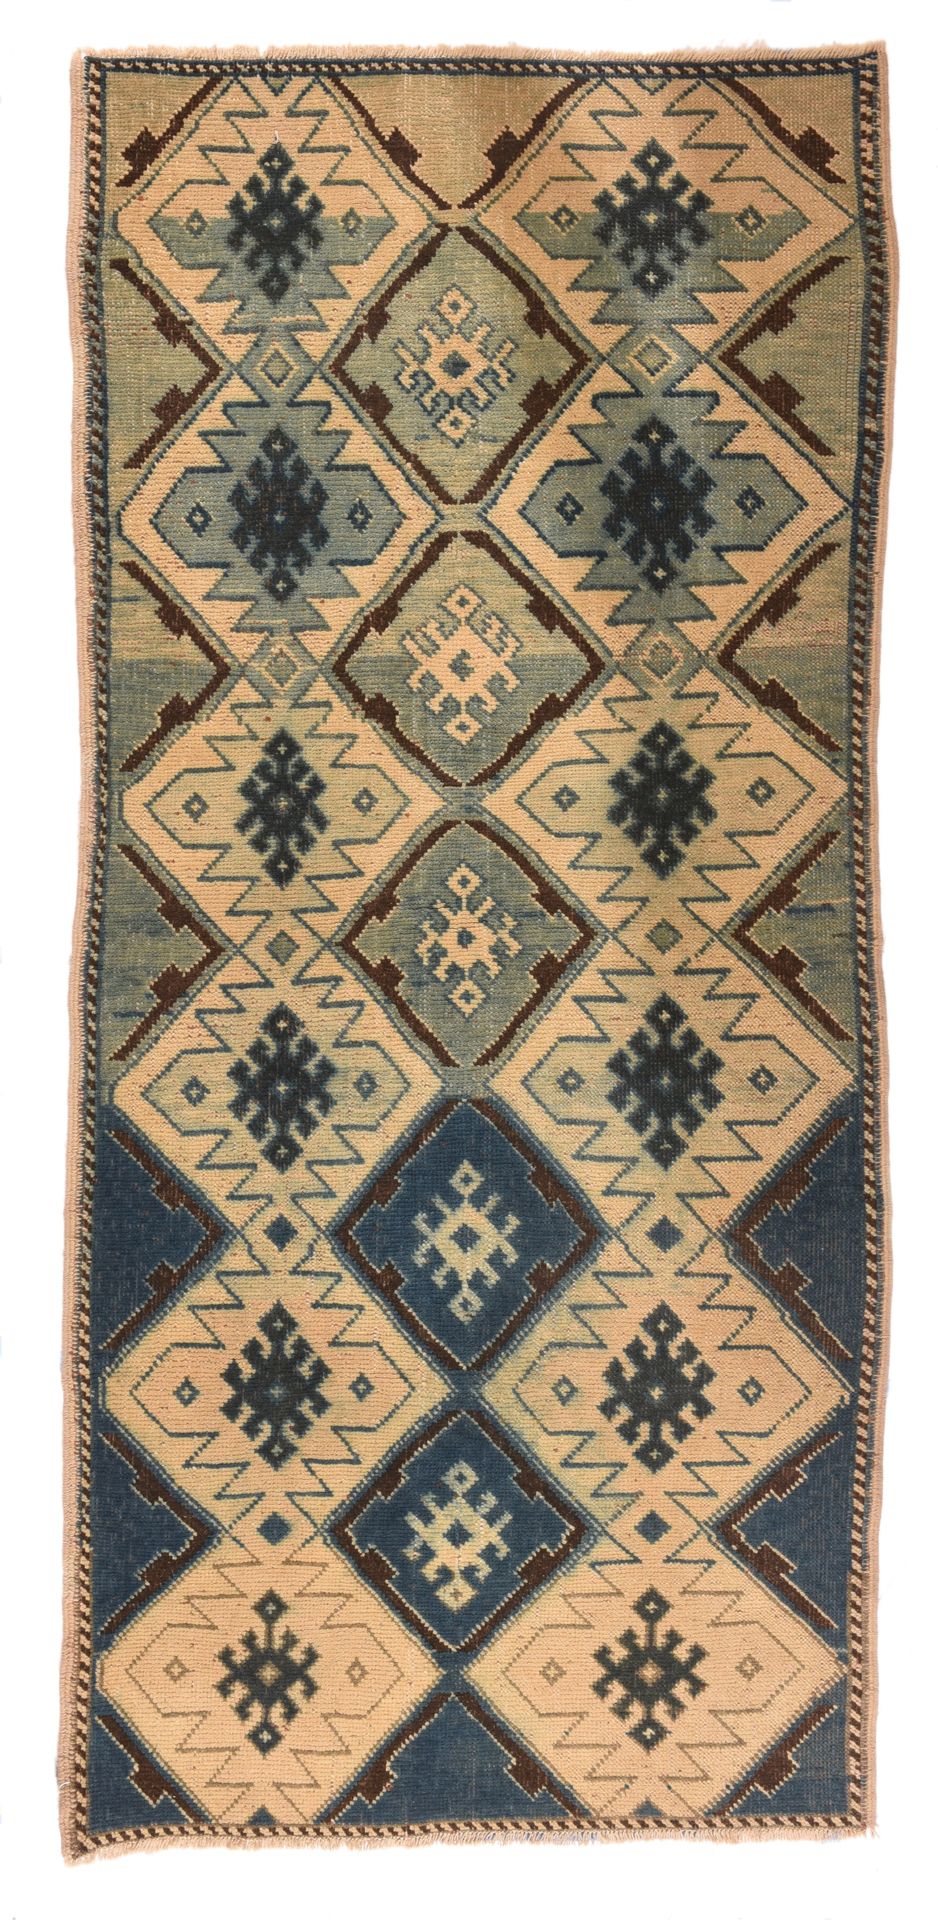 Null Tappeto vintage in lana turca, 3'3" x 6'11" (0,99 x 2,11 M)